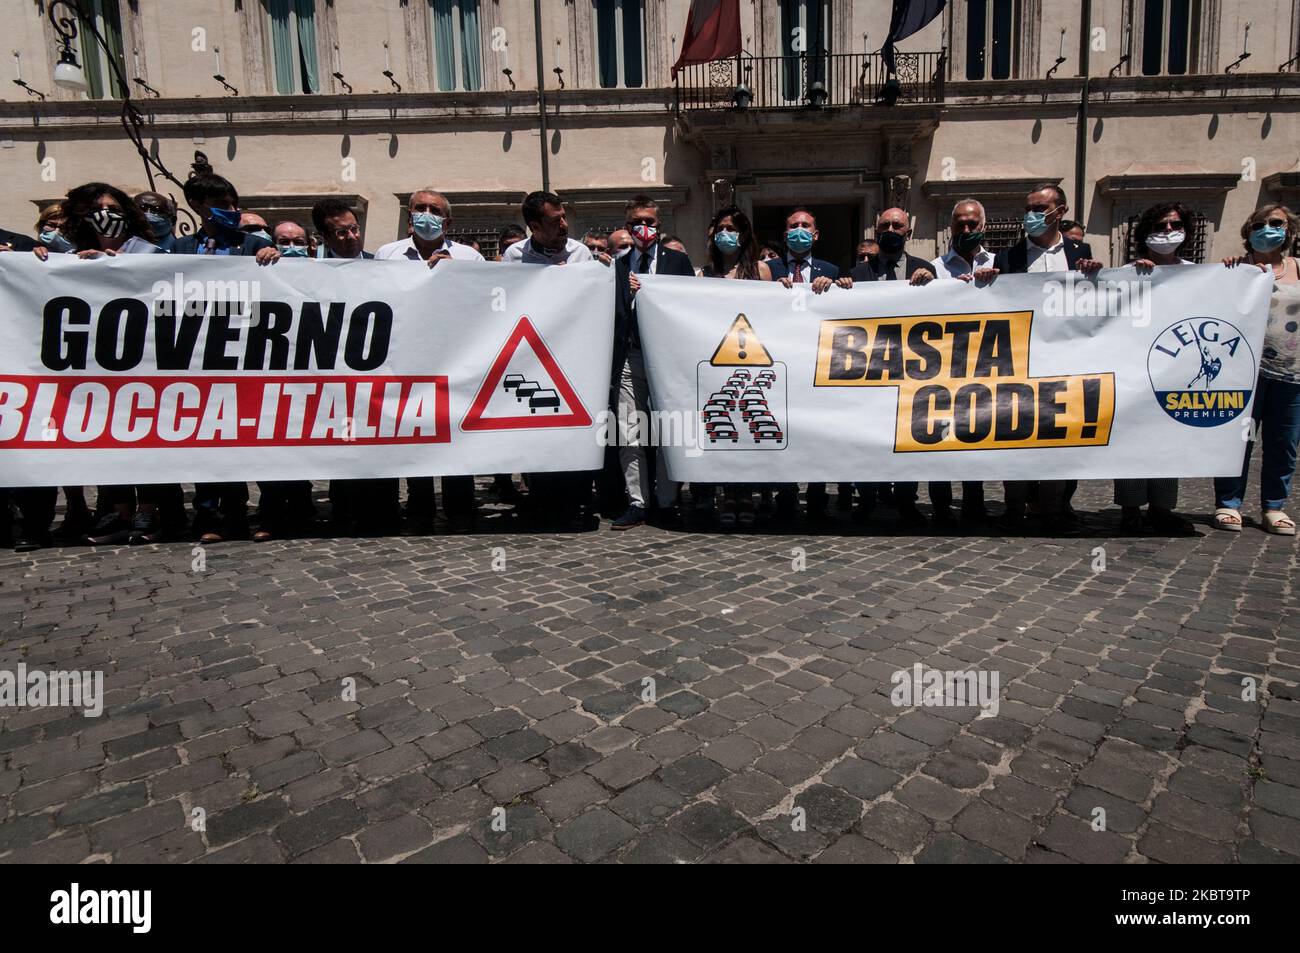 Le chef du parti politique de Lega Matteo Salvini proteste lors d'une manifestation appelée 'Blocca Italia' (Block Italy) sur 9 juillet 2020 à Rome, en Italie. Le dirigeant de la Lega proteste contre le gouvernement italien qui, selon lui, bloque l'économie italienne et demande la libération de la situation d'Autostrade S.p.A. (photo d'Andrea Ronchini/NurPhoto) Banque D'Images